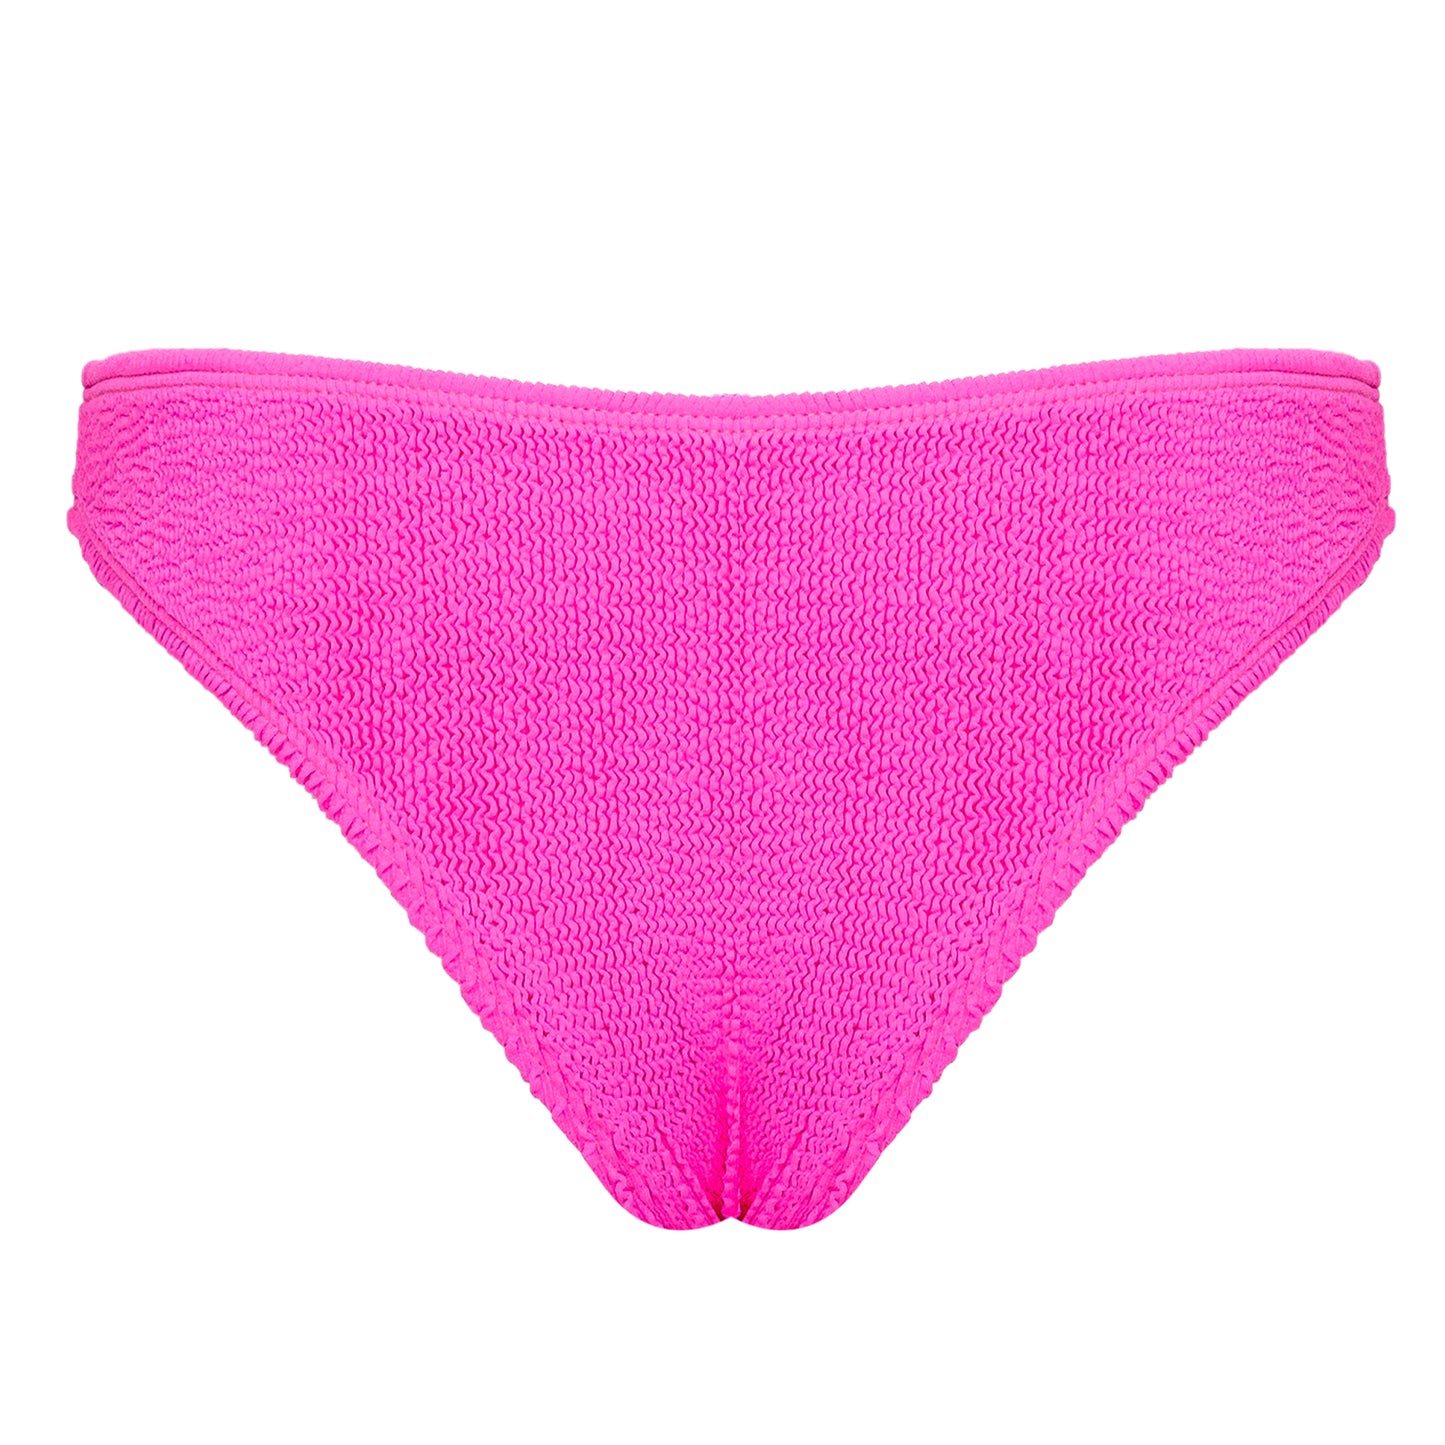 Barcelona Classic Bikini Cheeky Bottoms  Hot Pink